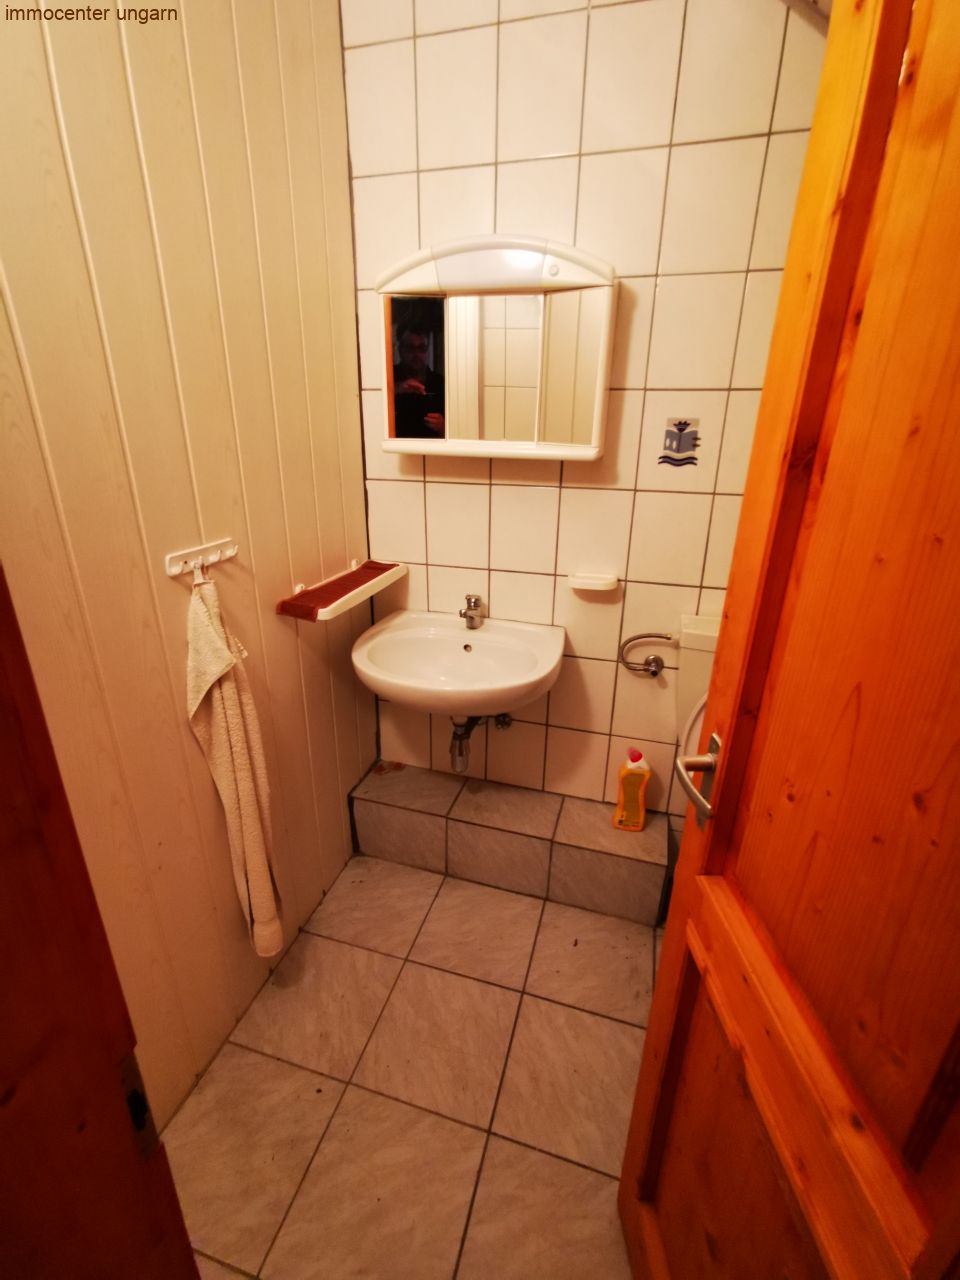 Toilet upstairs